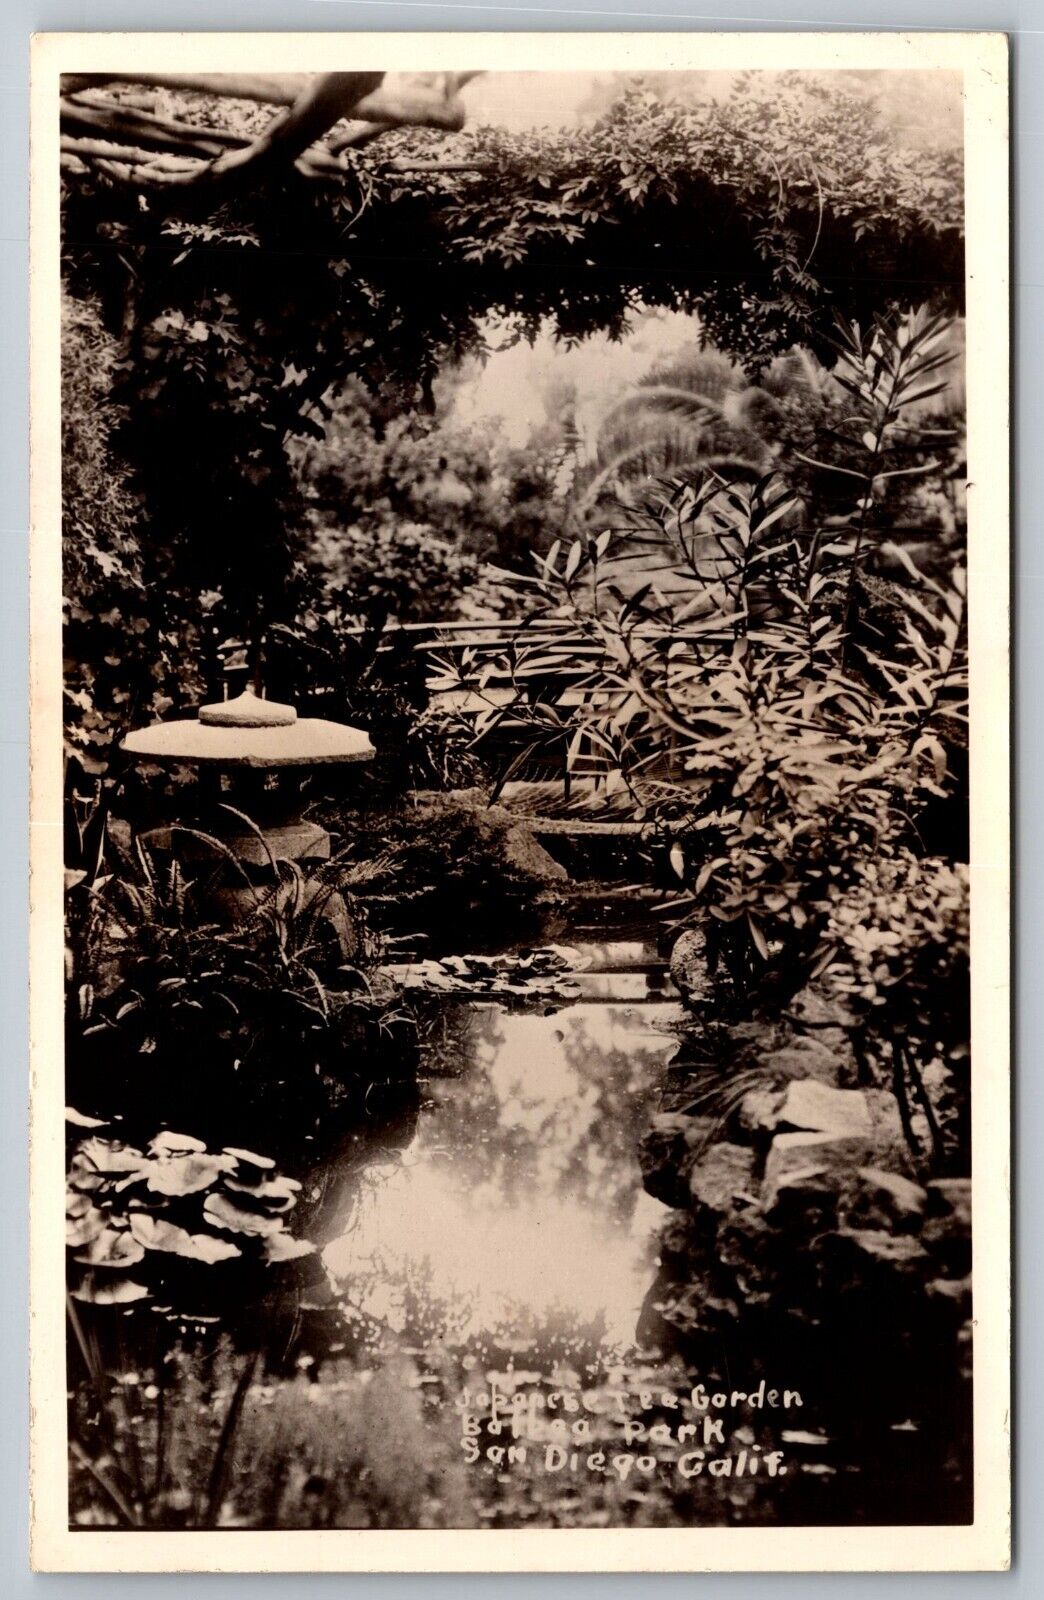 Japanese Tea Garden. Balboa Park. San Diego California Real Photo Postcard RPPC